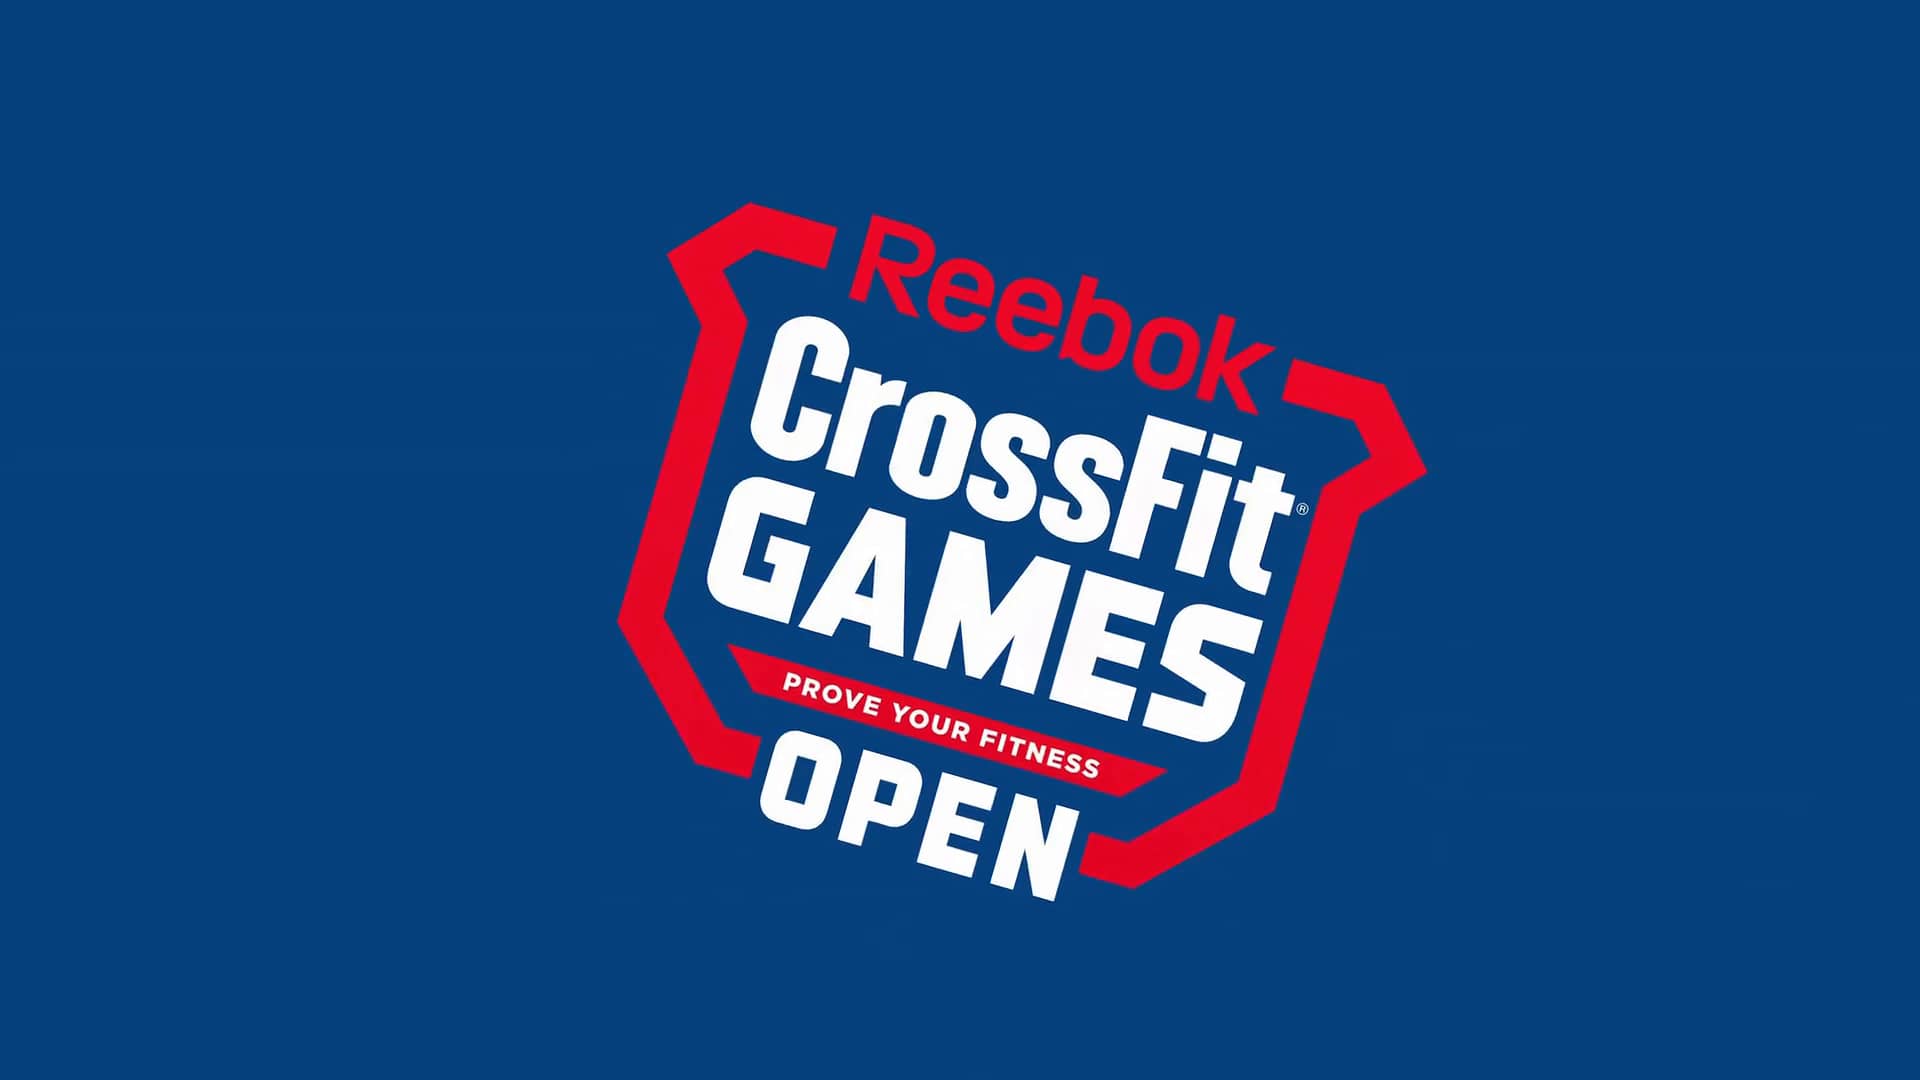 reebok crossfit games open 2017